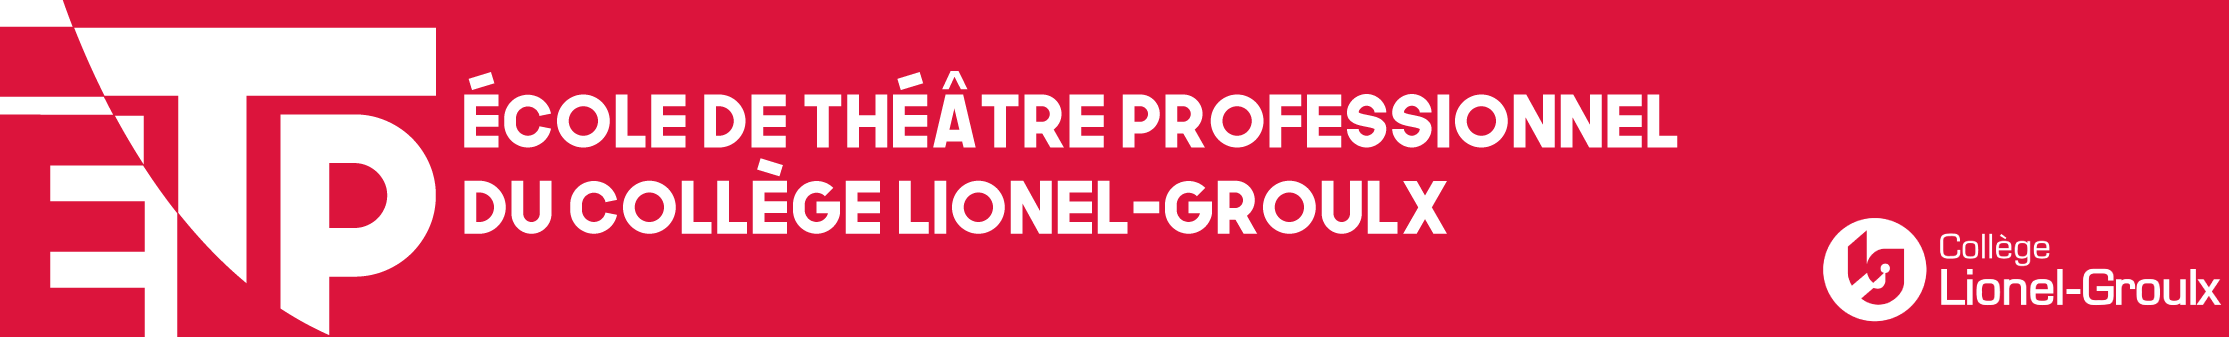 École de théâtre professionnel-Collège Lionel-Groulx